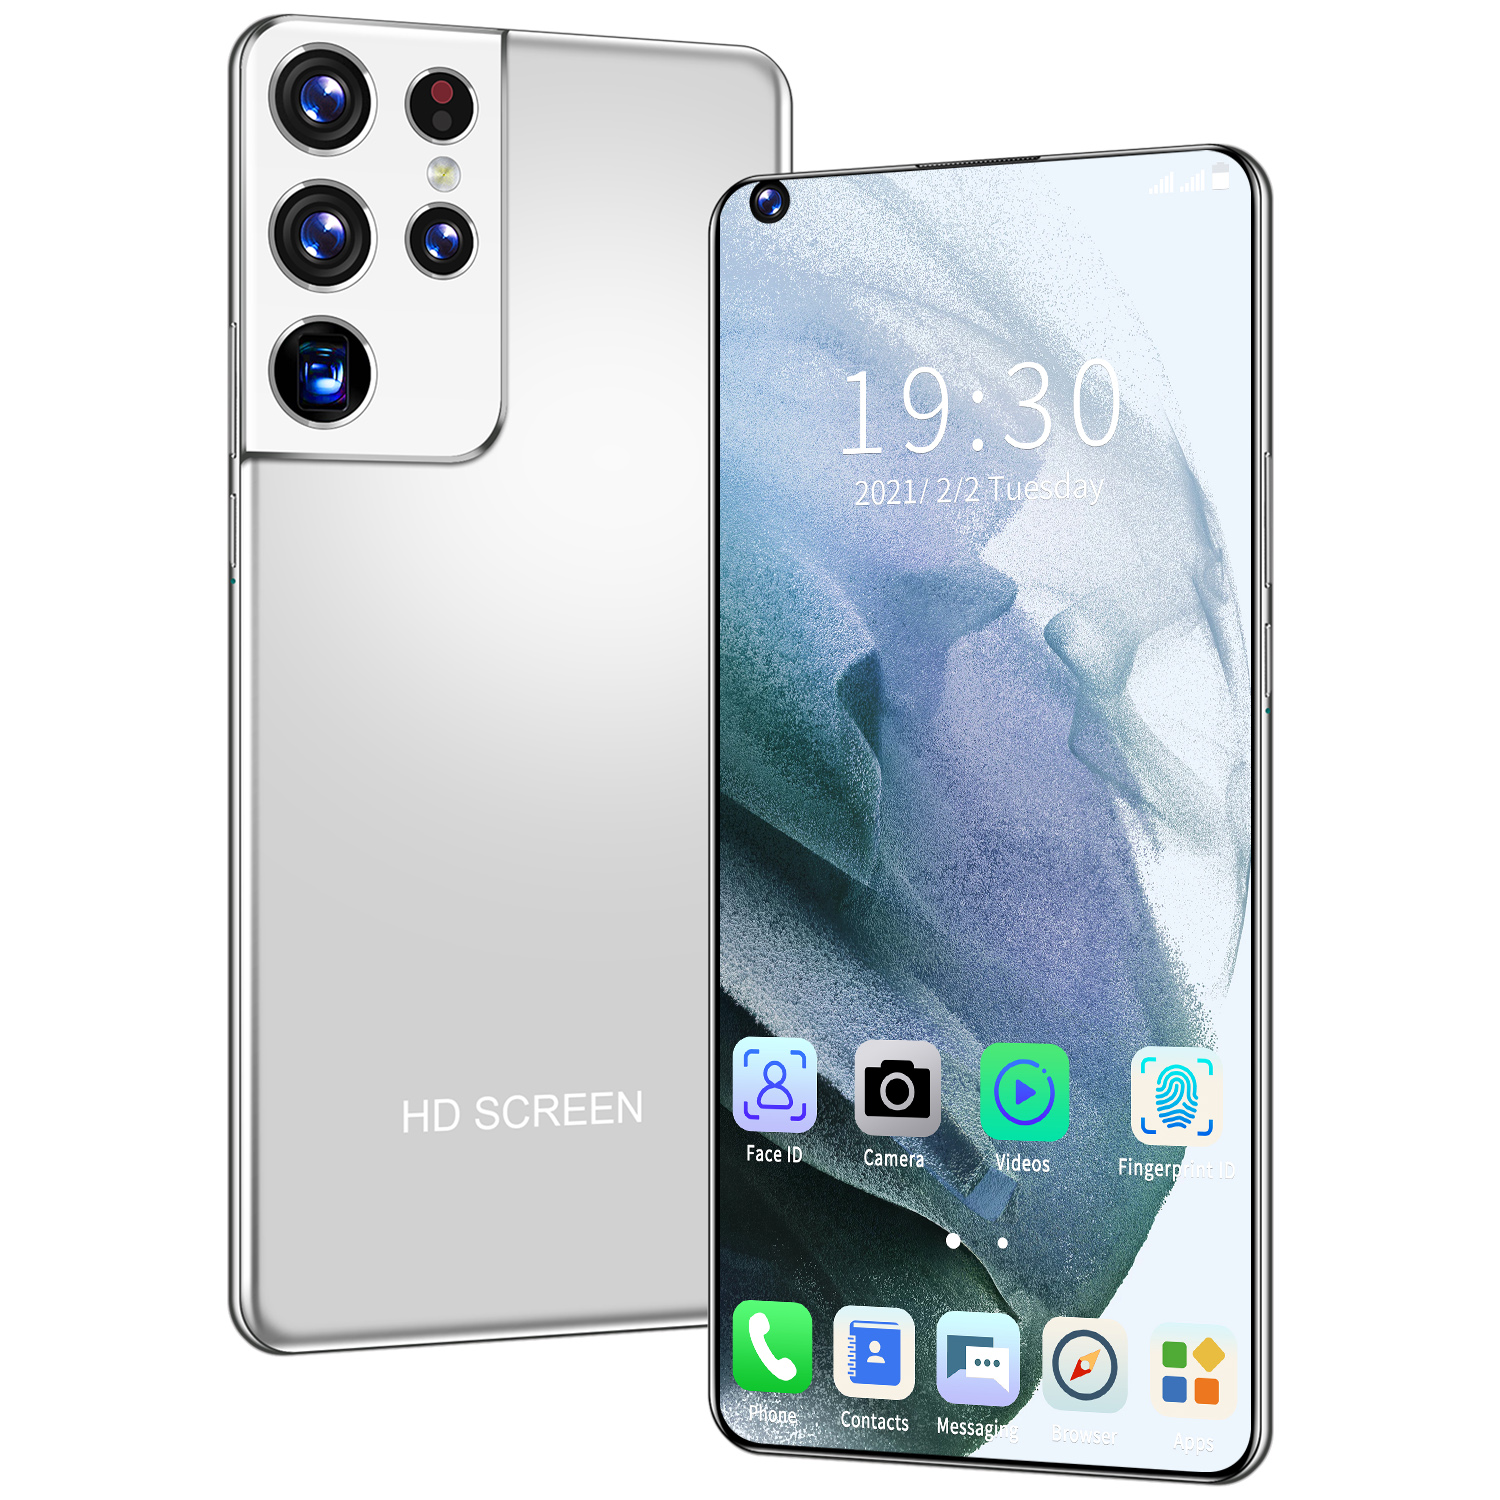 โทรศัพท์ราคาถูก Sansumg S21+Ultra โทรศัพท์มือถือ 7.5นิ้ว 16GB RAM+512GB ROM จอใหญ่ มือถือ New smartphone Android10.0 phone รองรับเกม Mobile phone full HD screen สมาร์ทโฟน มือถือราคาถูก S21